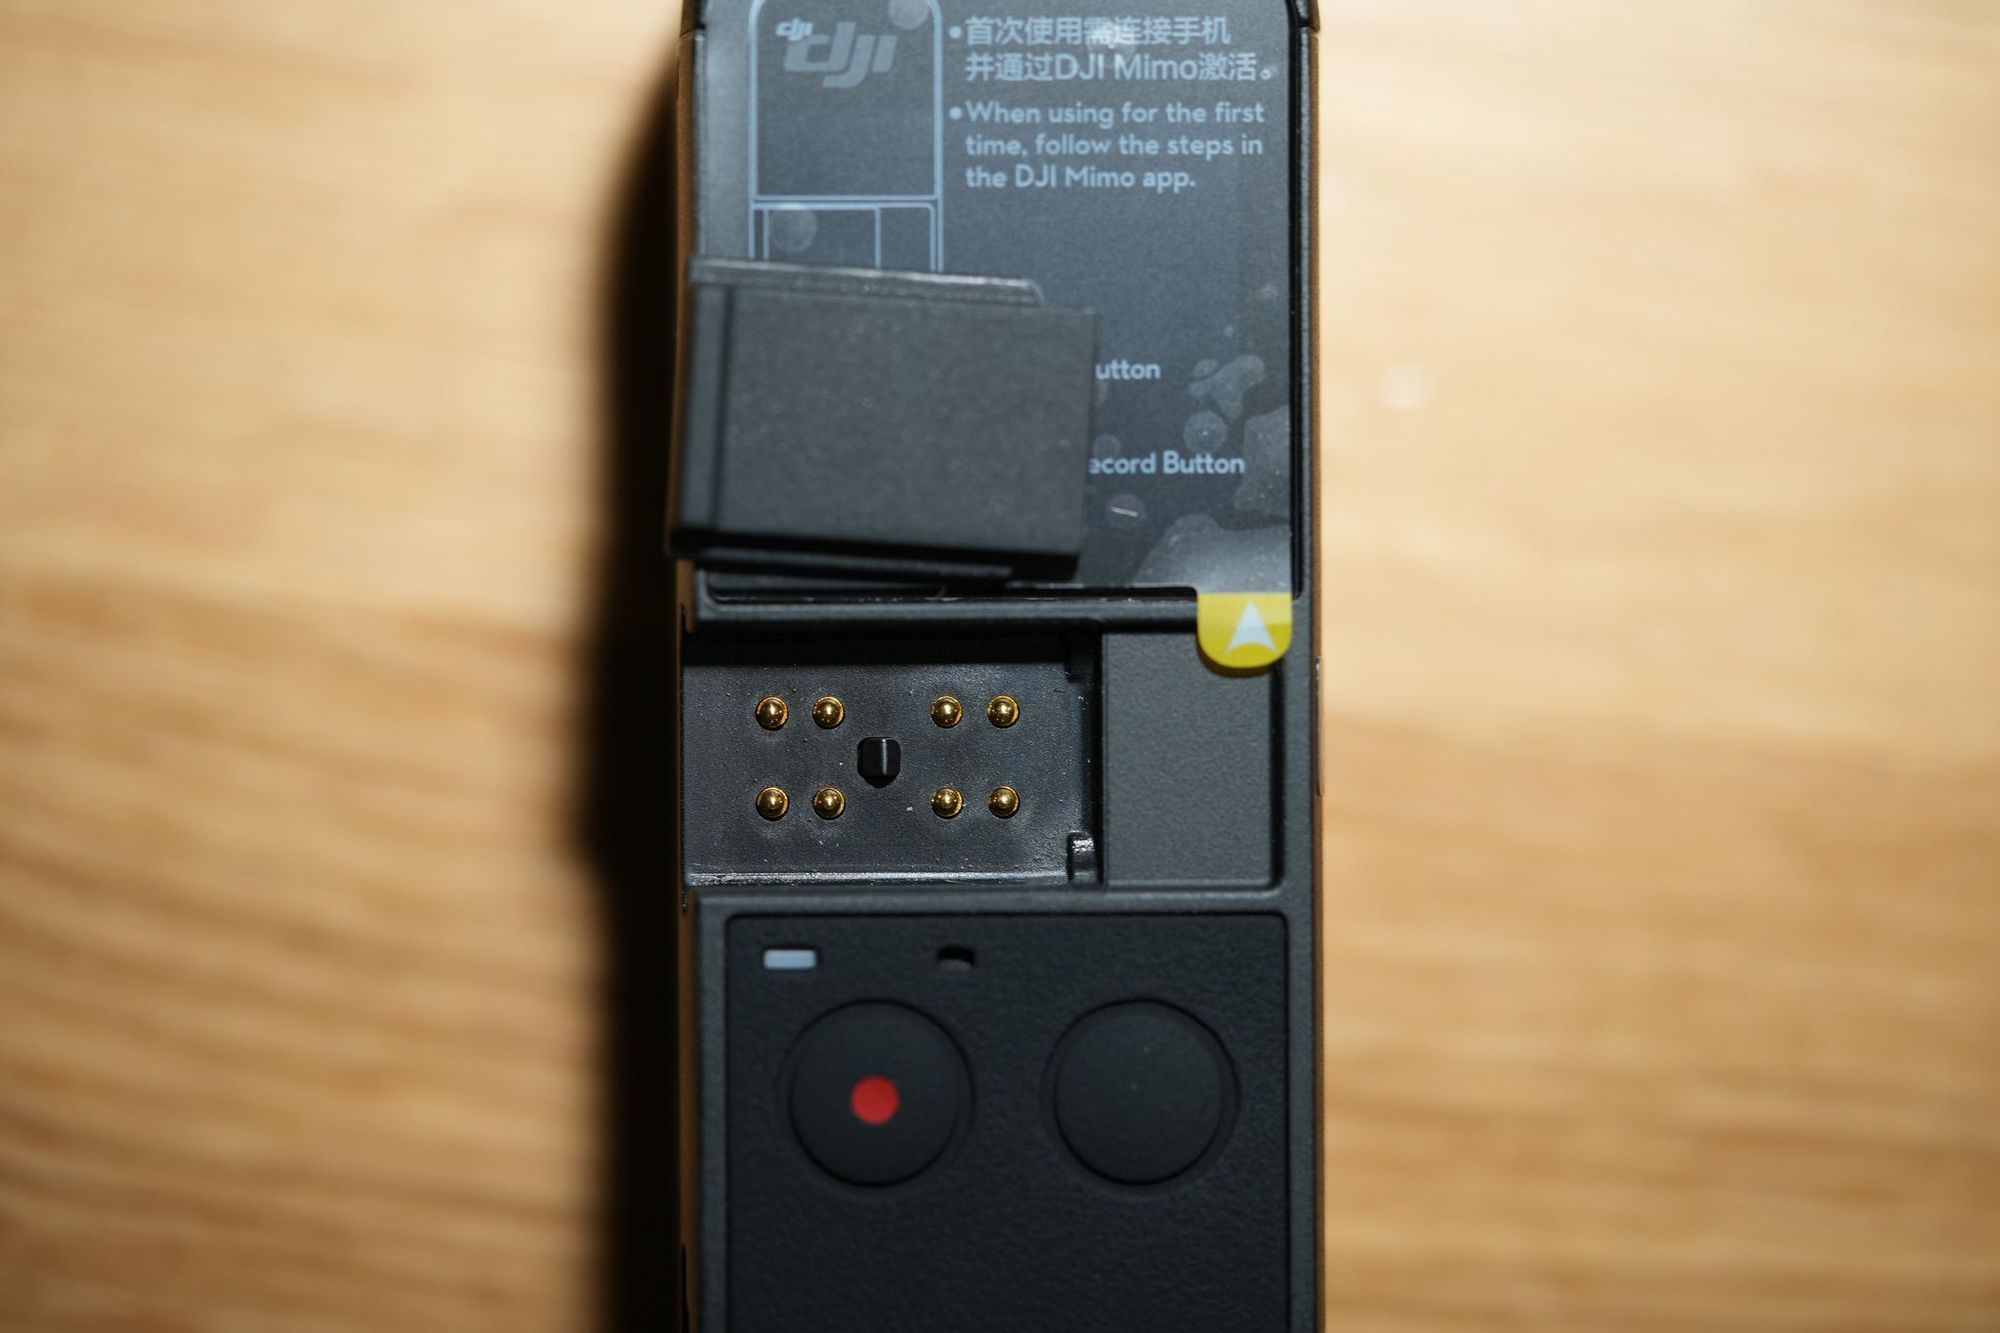 รีวิว DJI Pocket 2 กล้องจิ๋วคู่ใจ Content Creator